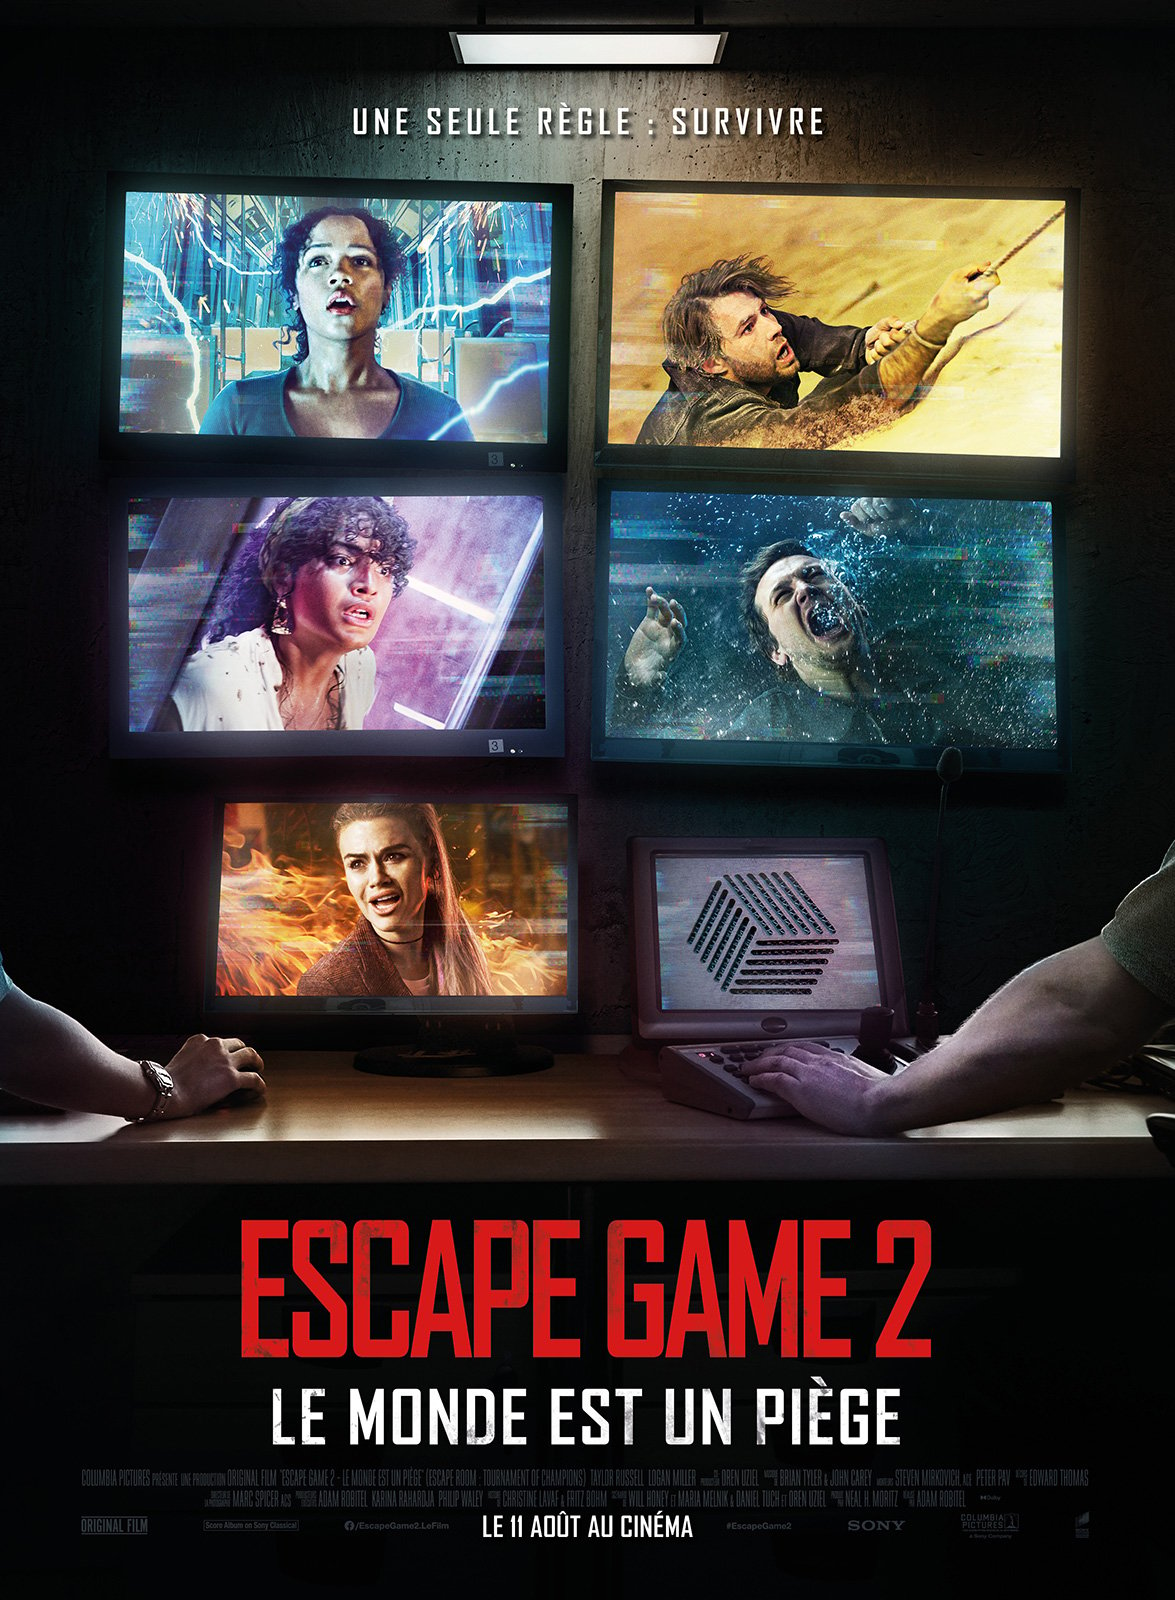 Escape Game 2 Vostfr Escape Game 2 - Le Monde est un piège - film 2021 - AlloCiné